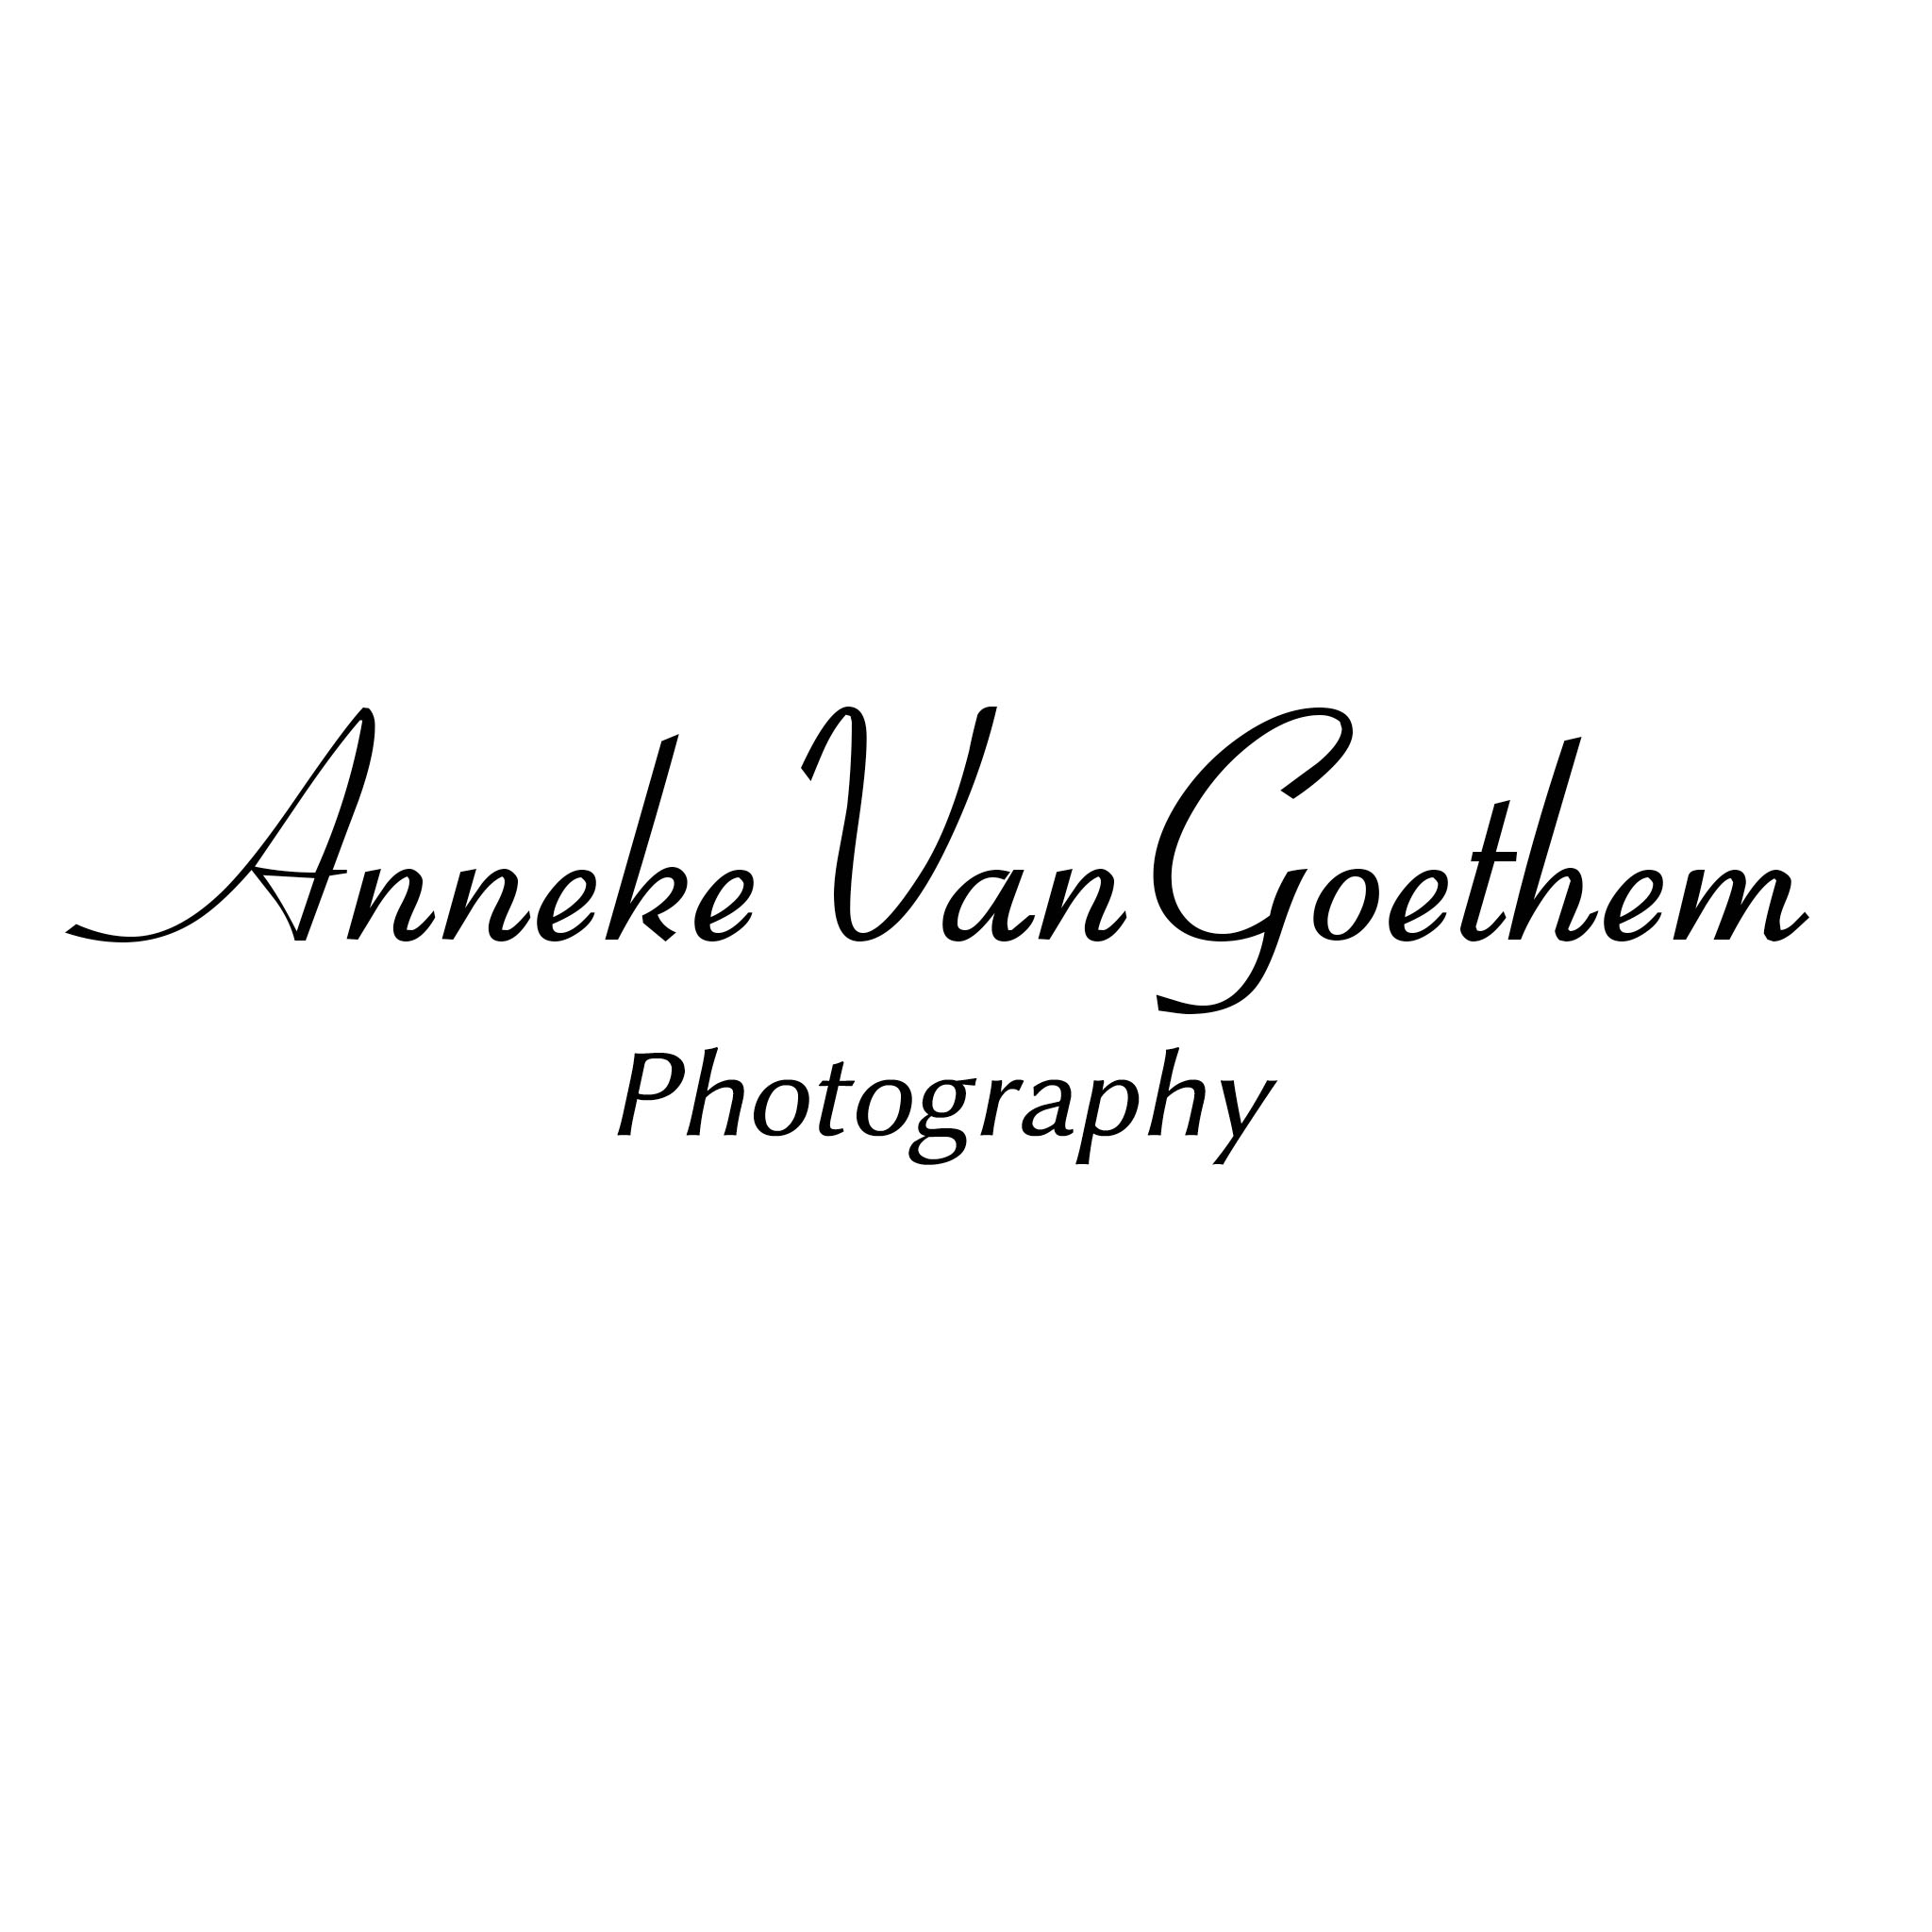 fotografen Antwerpen Anneke Van Goethem Photography